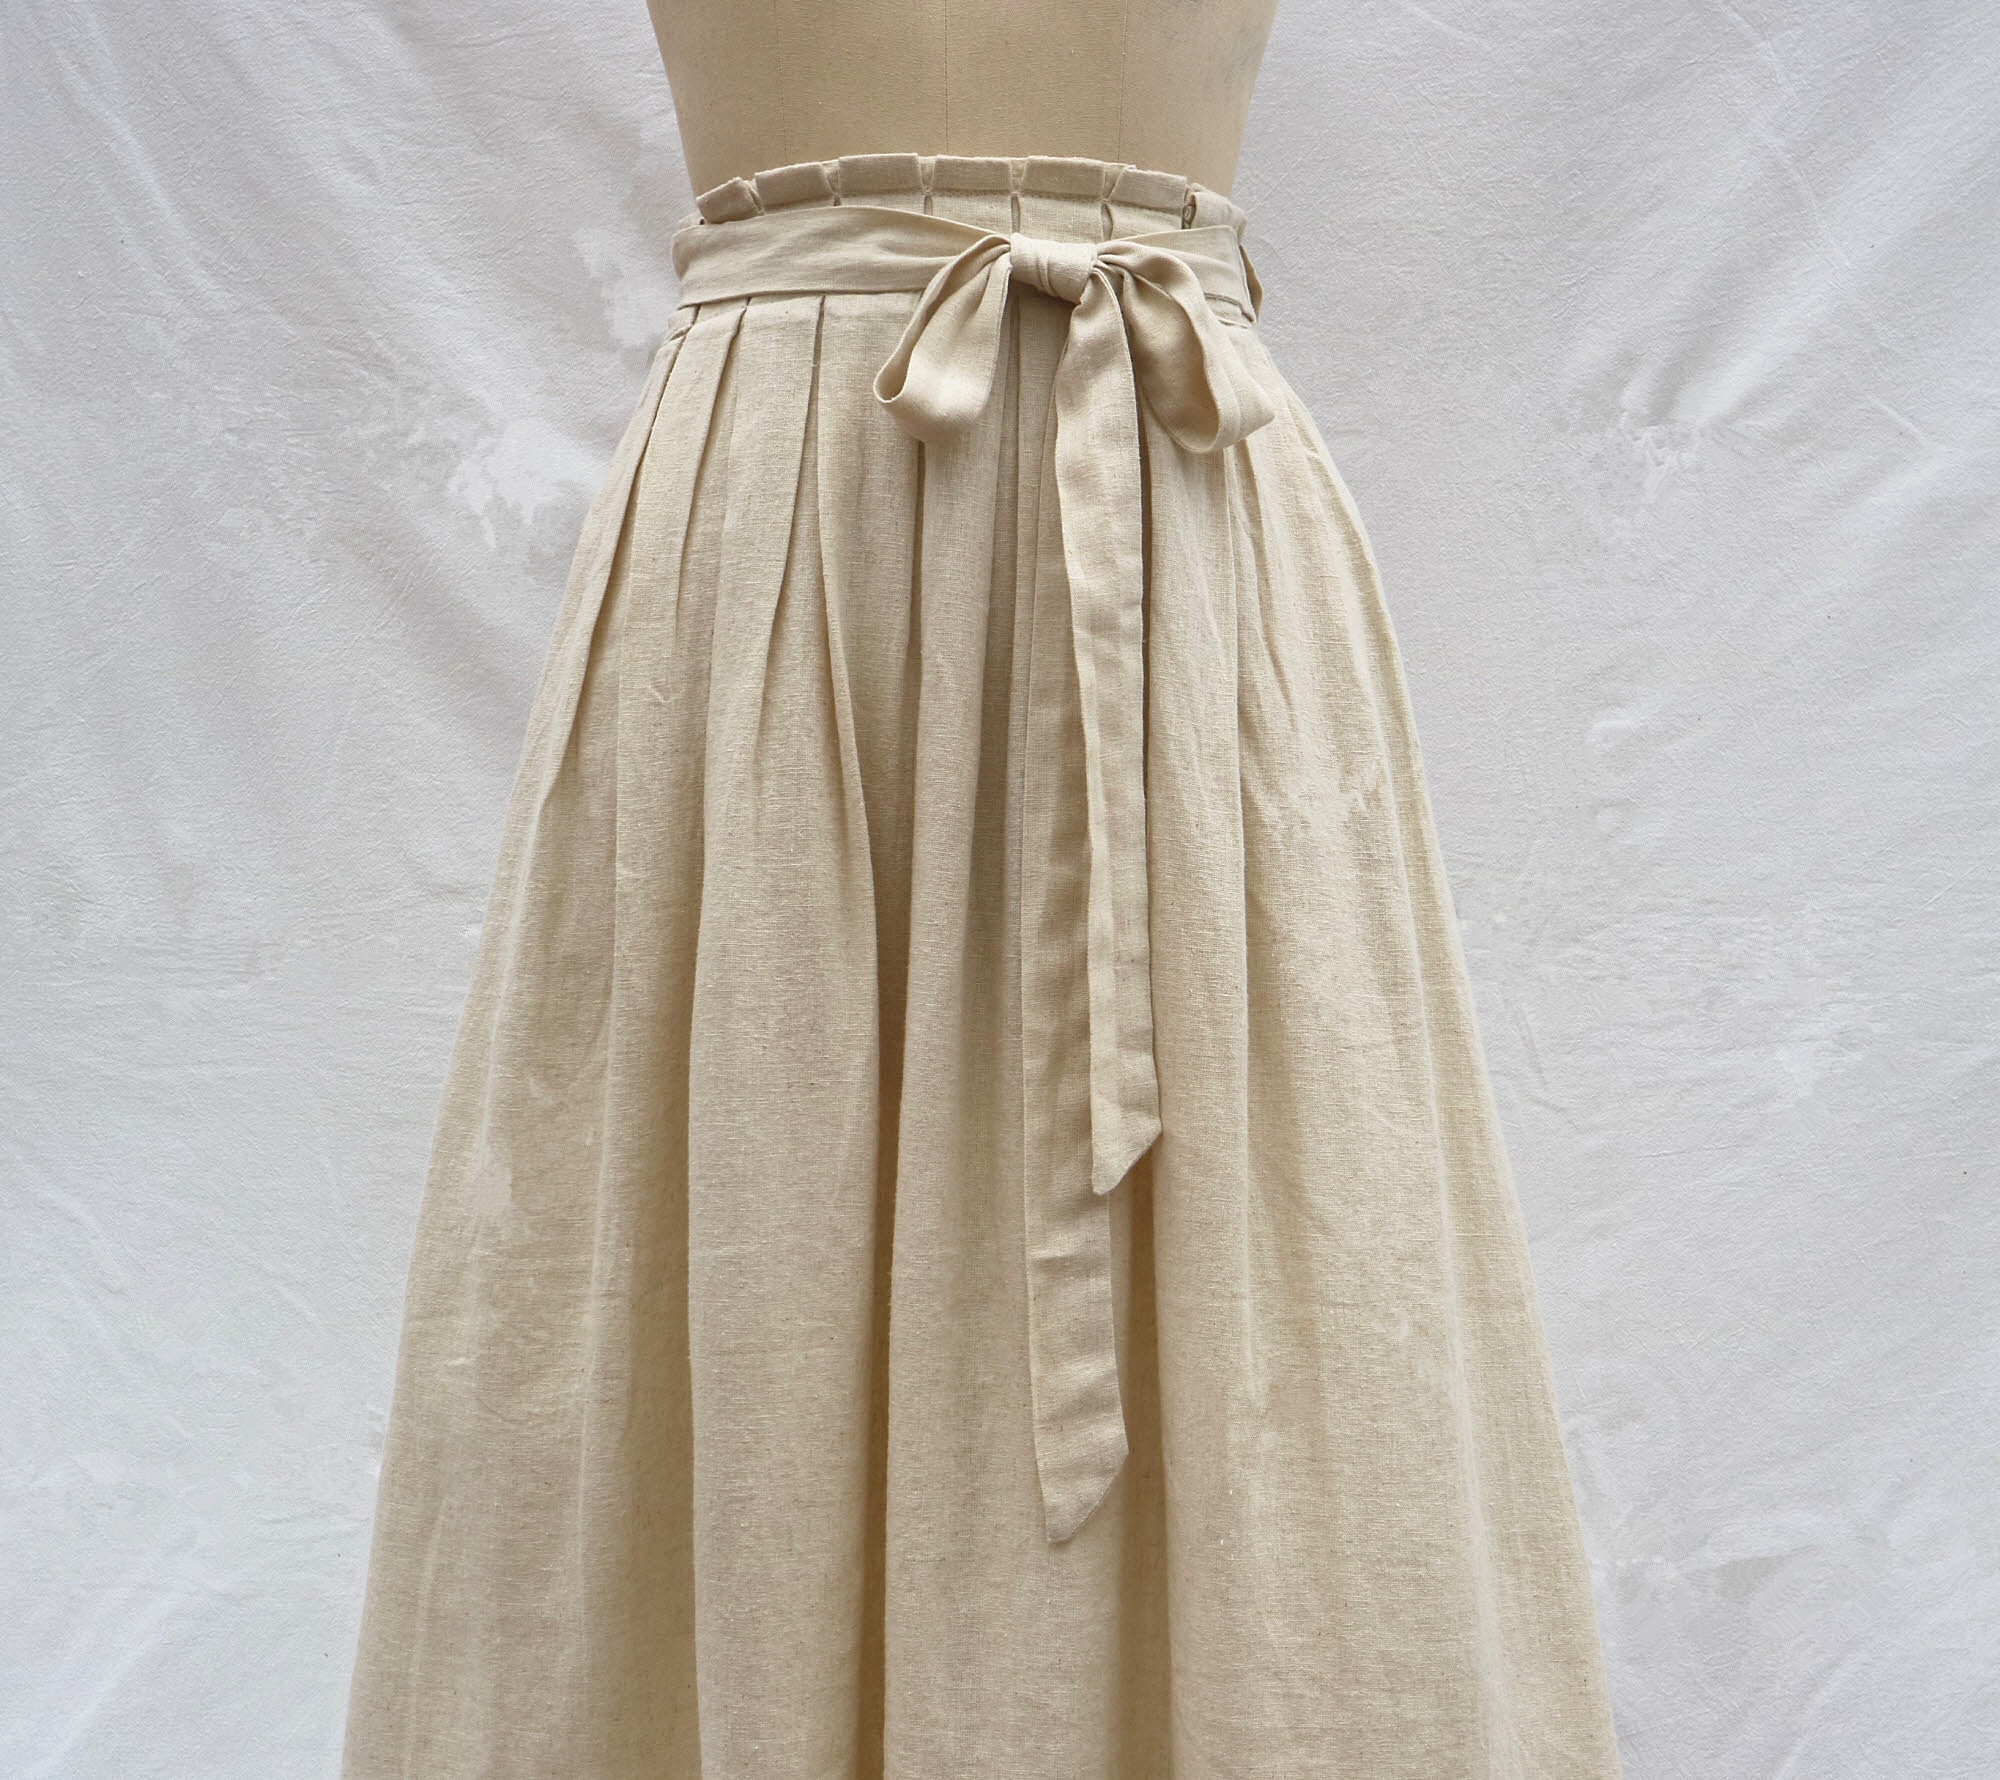 Apricot Linen Skirt Long Skirt Pleated Maxi Skirt Women's - Etsy